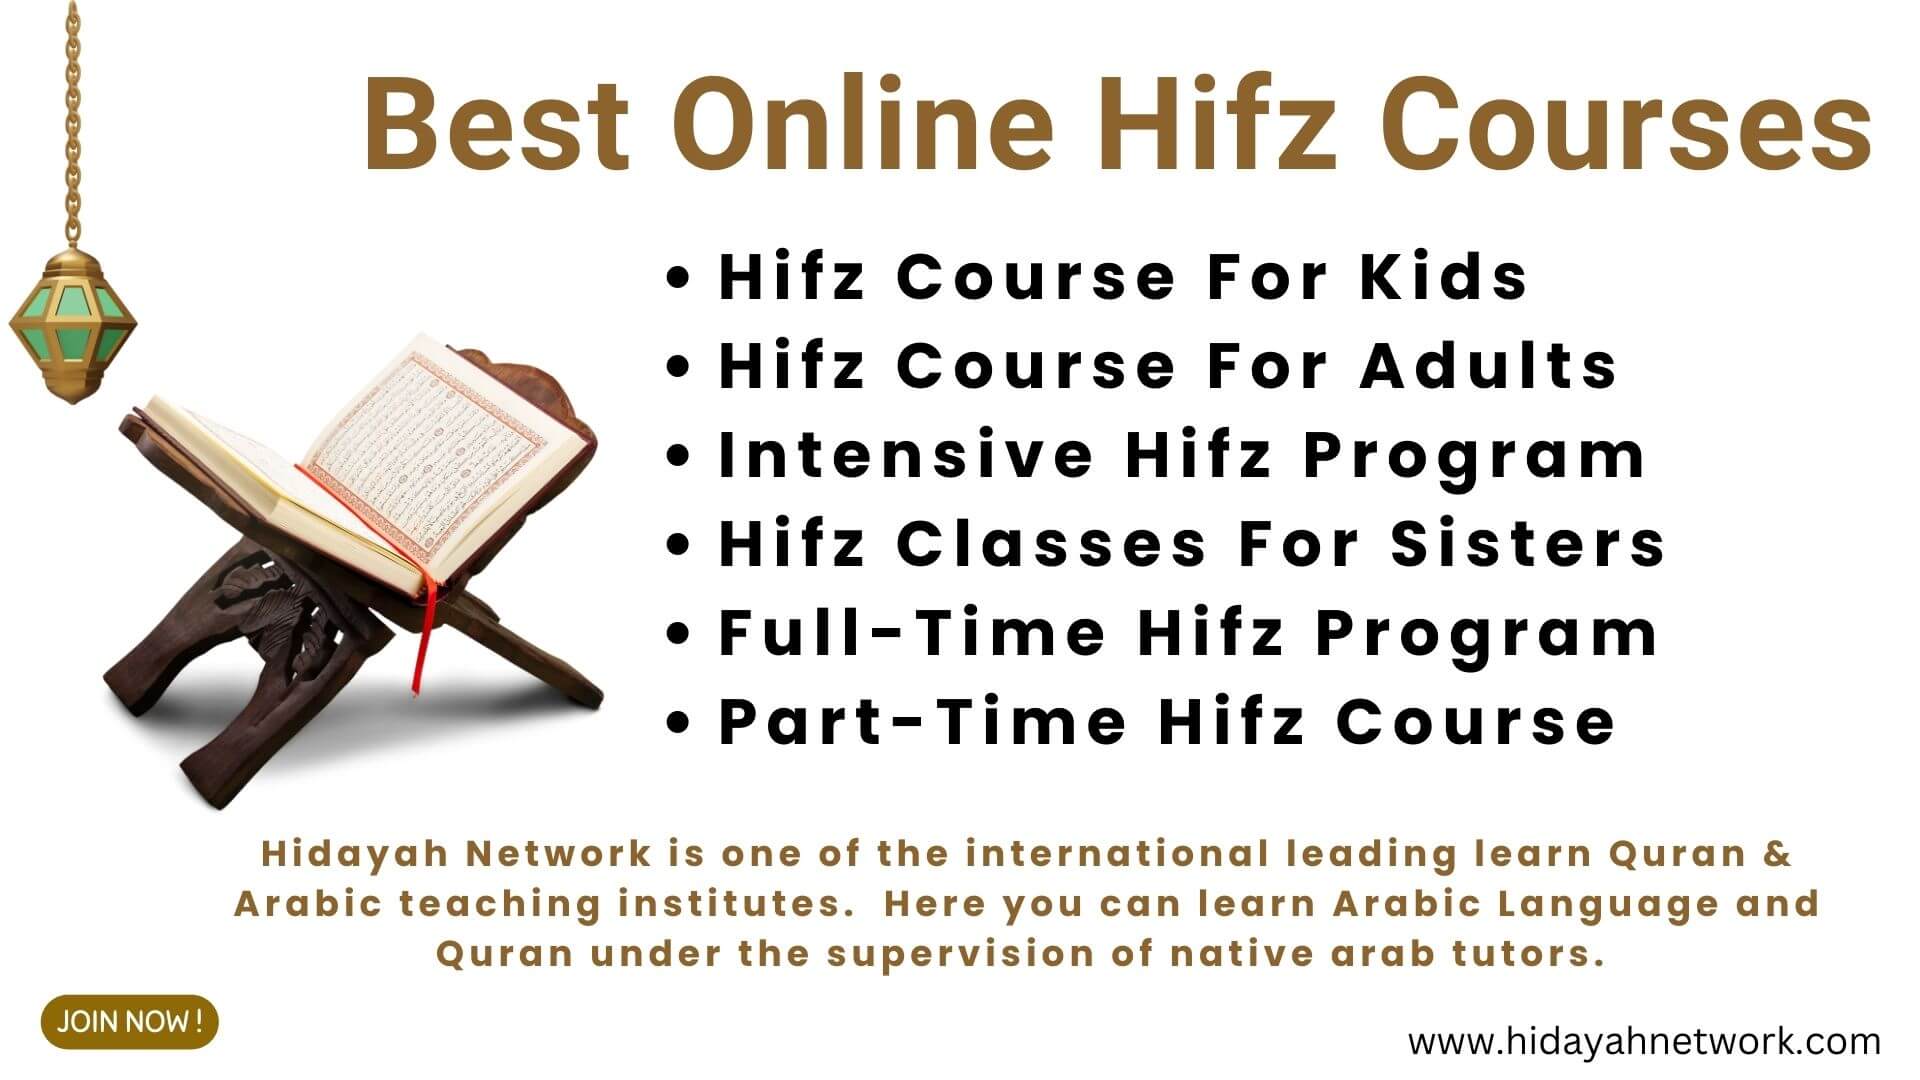 Best Online Hifz Courses